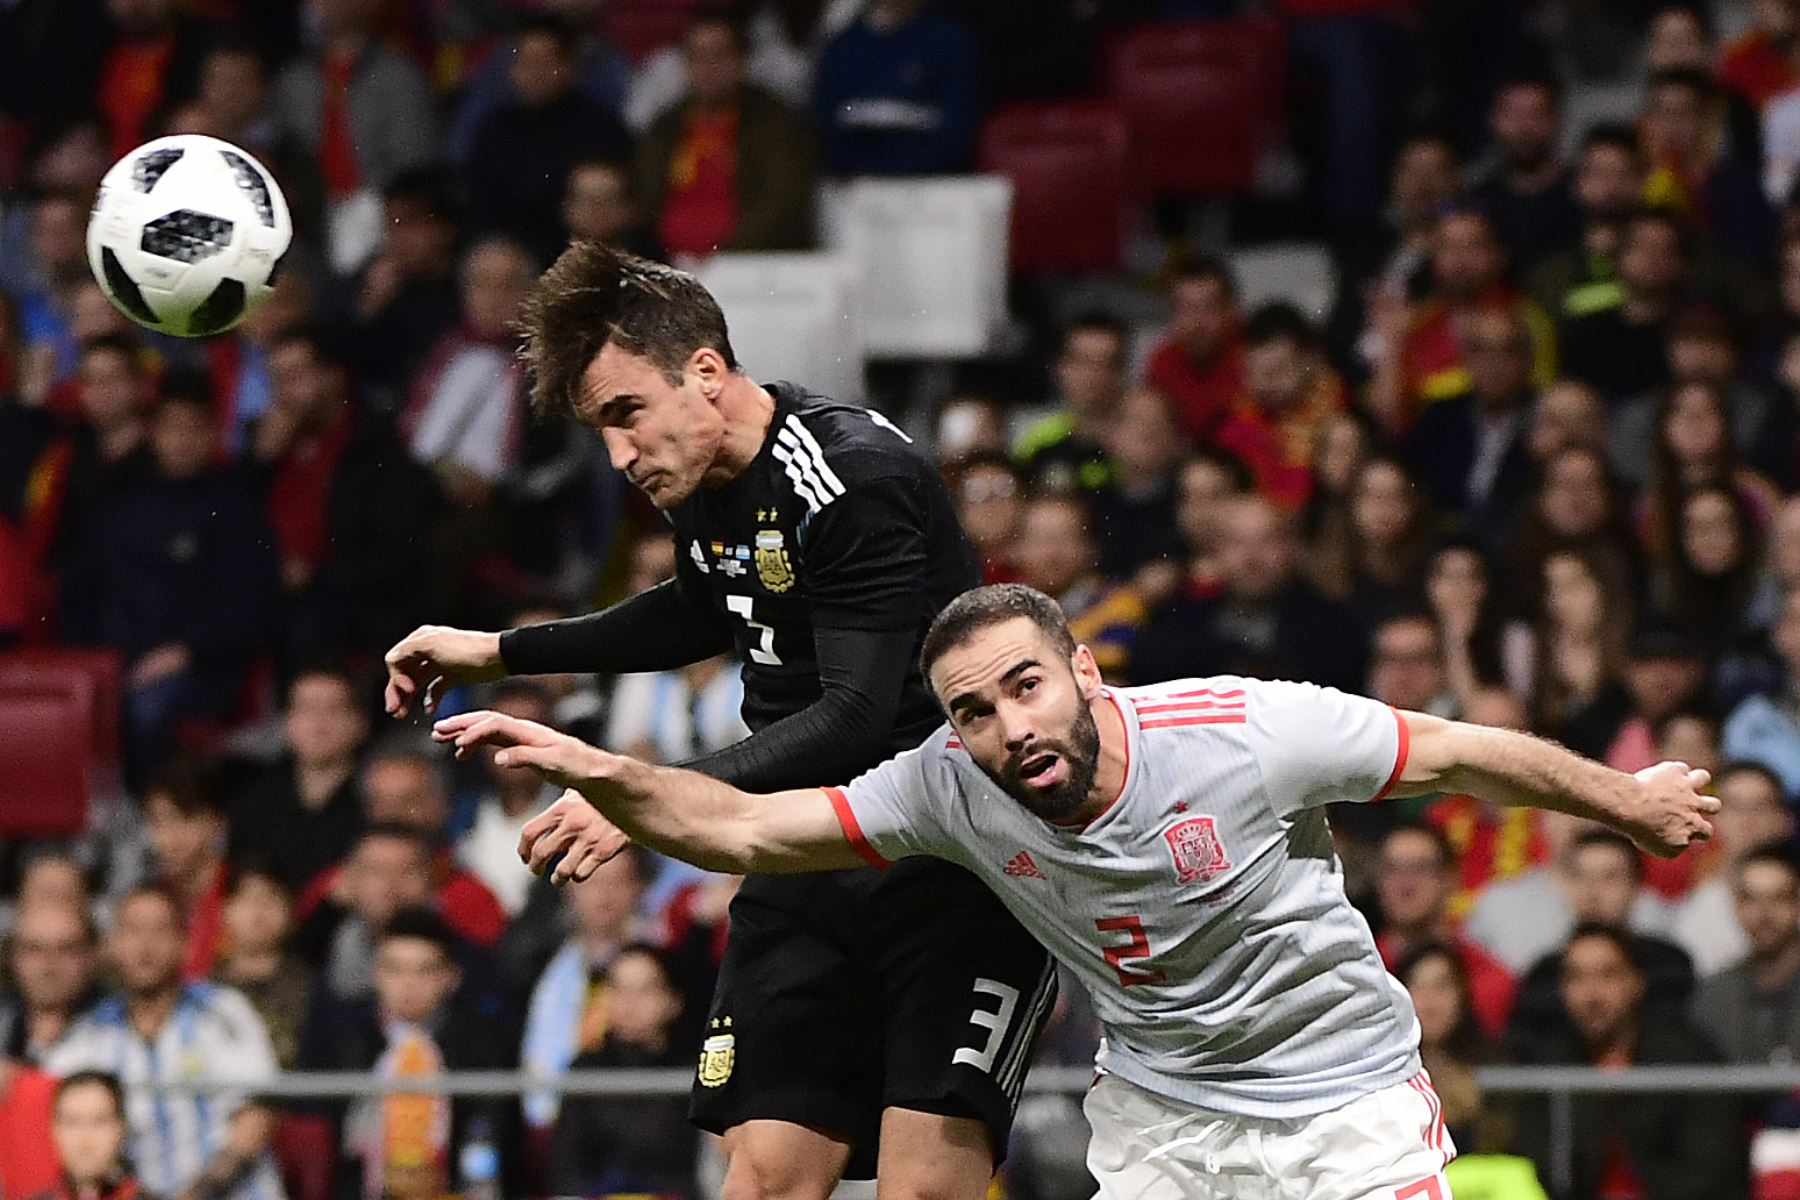 España goleó 6-1 a Argentina, con triplete de Isco, en un partido amistoso de preparación para el Mundial de Rusia. Foto: AFP